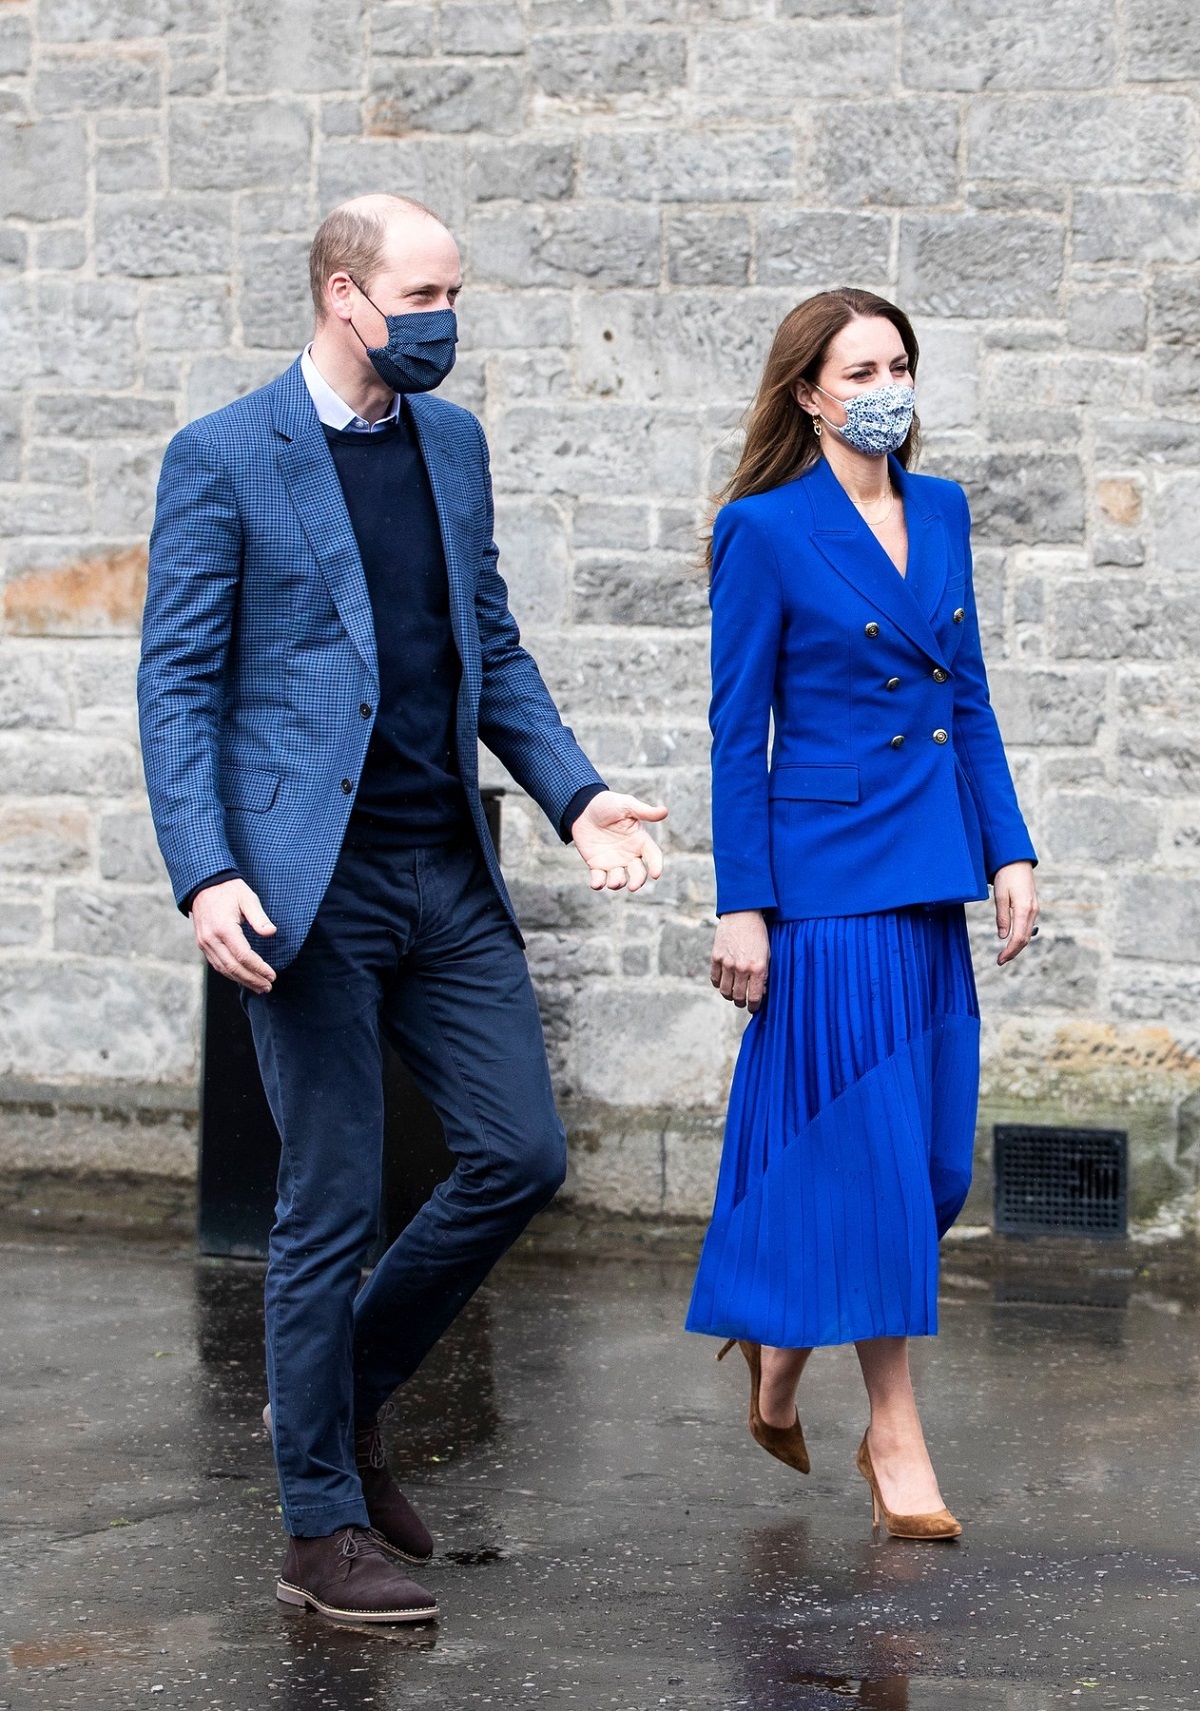 Kate Middleton alături de Prințul William în timp ce este îmbrăcată într-o vestimentație monocromă albastră deoarece copiază ținutele emblematice ale Prințesei Diana